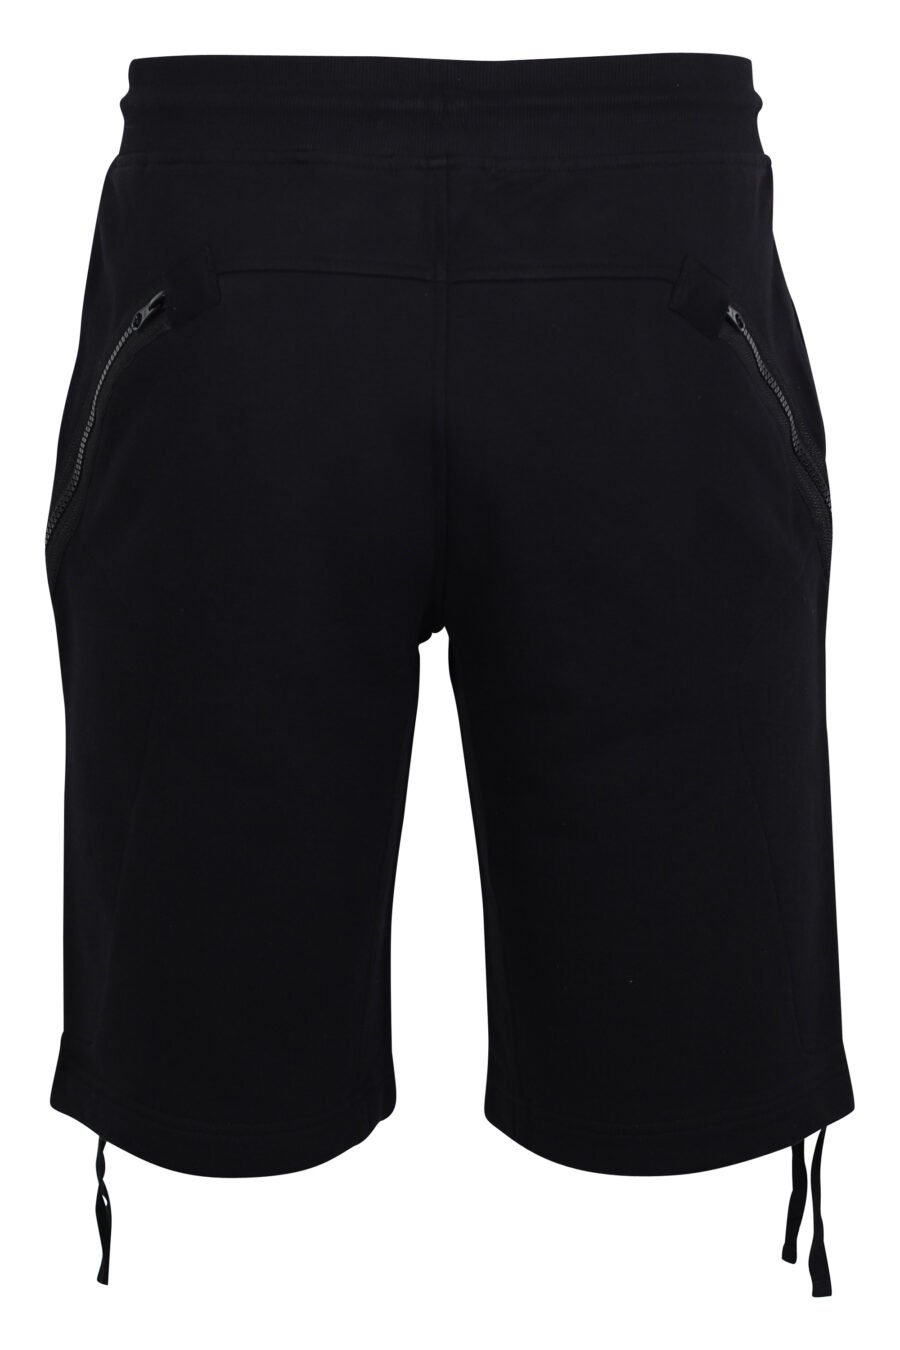 Pantalón corto negro estilo cargo con bolsillos diagonales y minilogo circular - IMG 2463